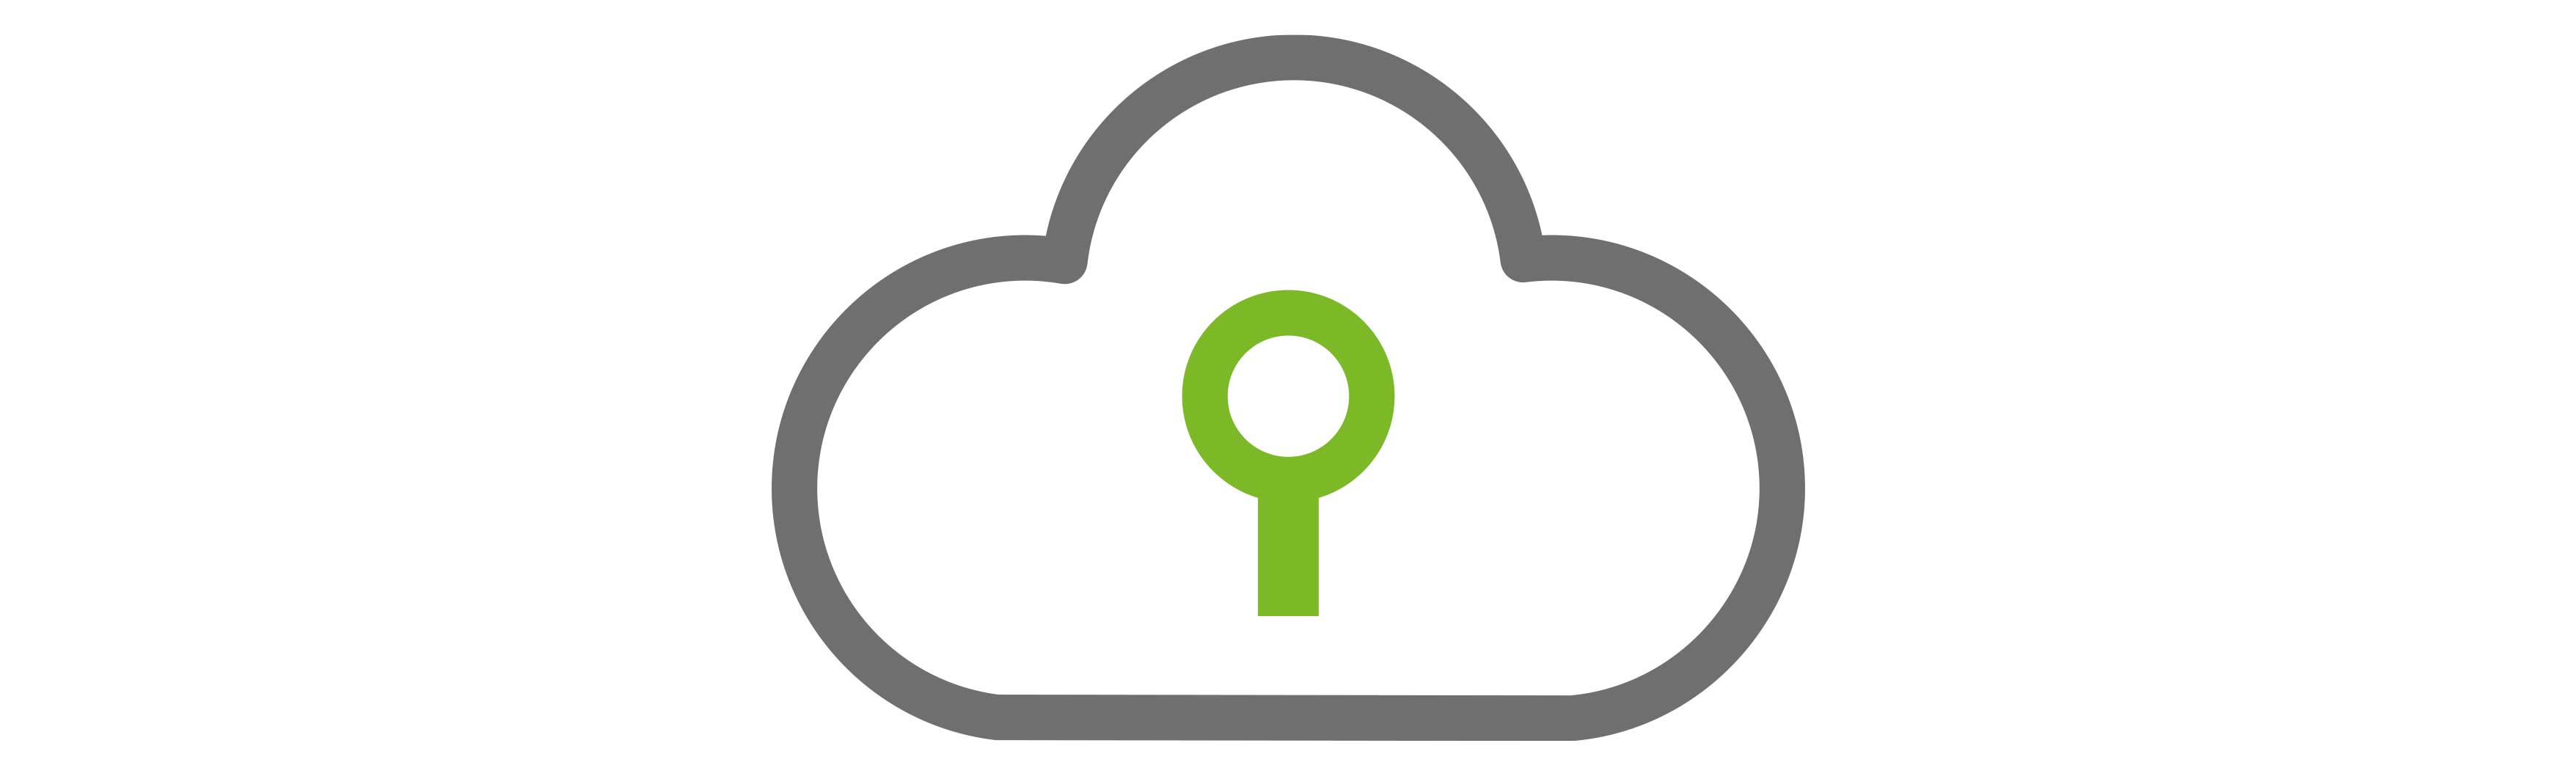 Licencia de copia de seguridad en la nube + 1Tb de almacenamiento cloud de Valorista para computadora